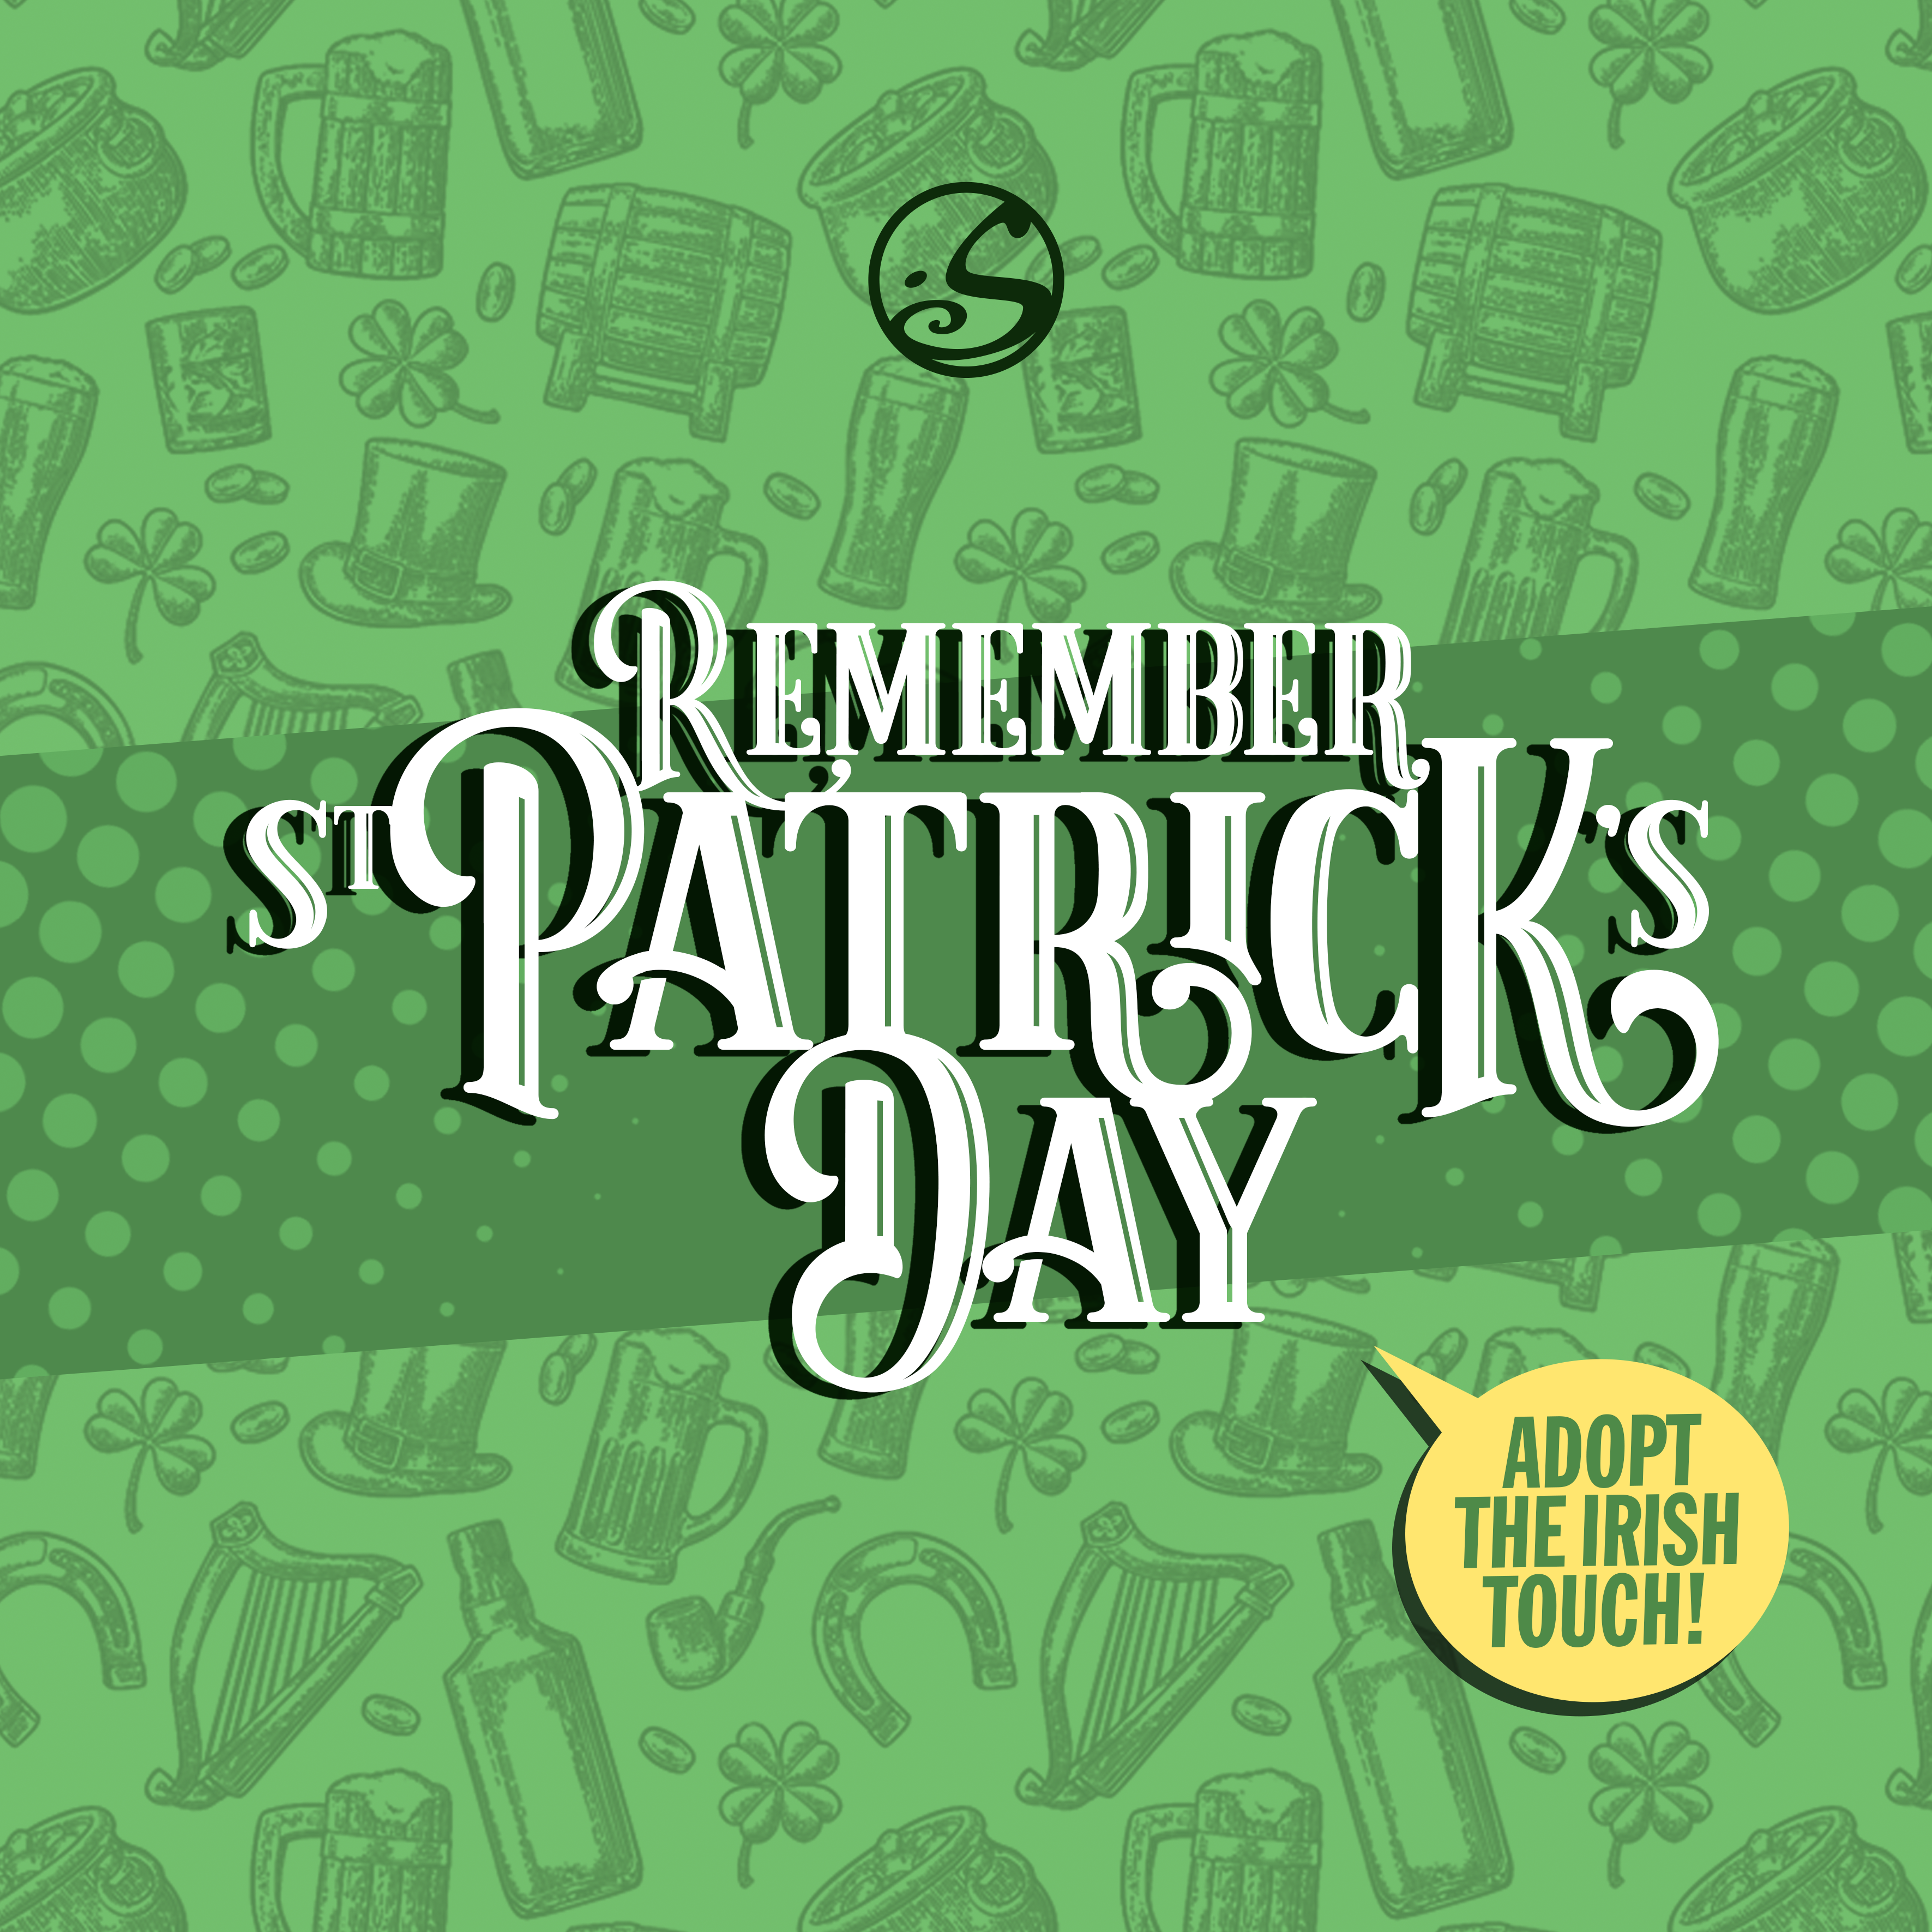 *Souvenez-vous de la Saint Patrick. Adoptez la touche irlandaise.